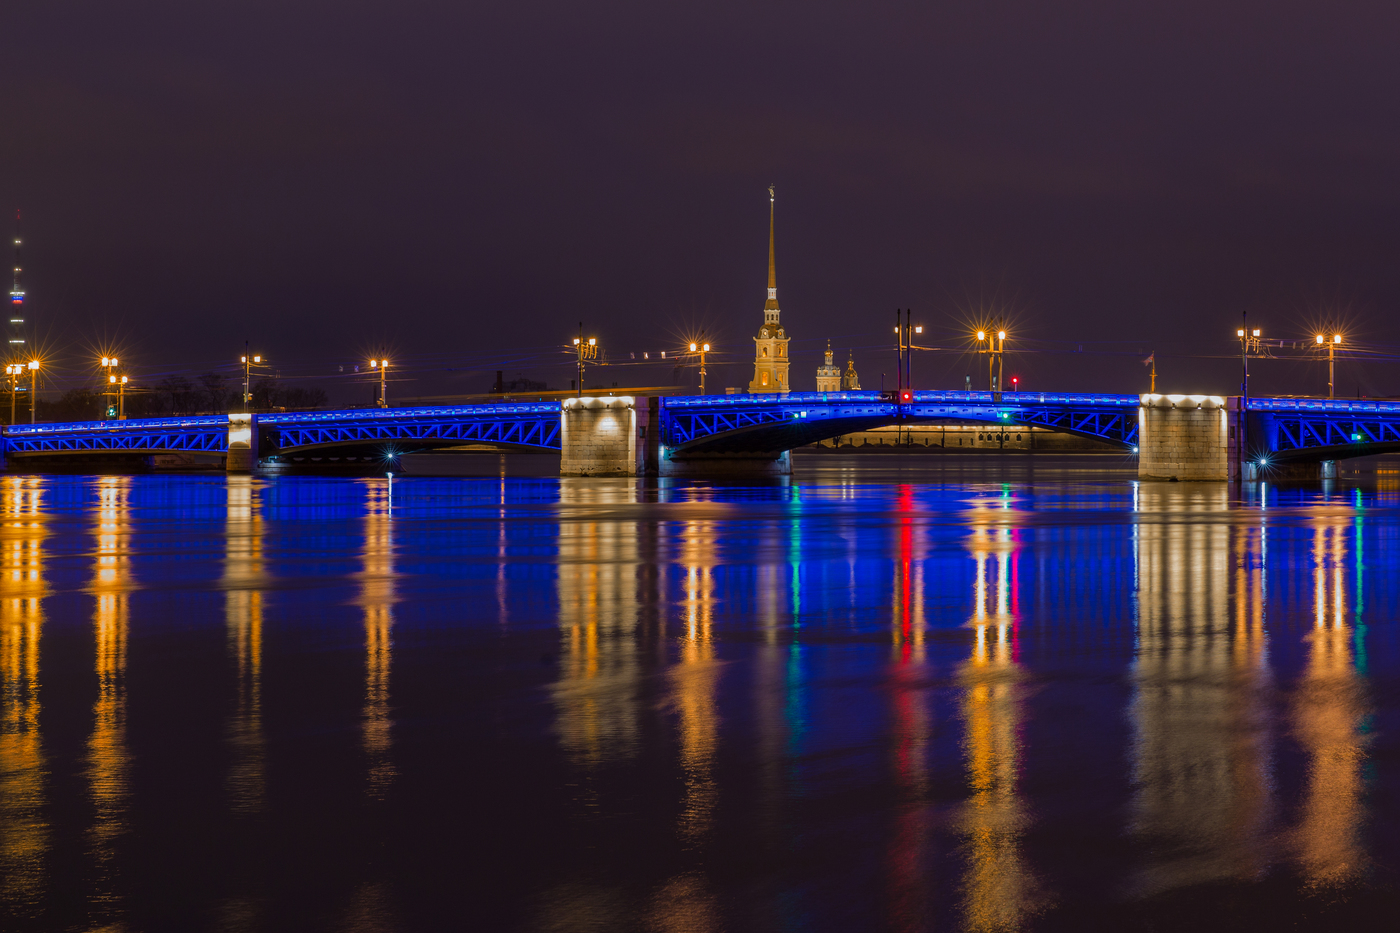 Фото синего моста в санкт петербурге